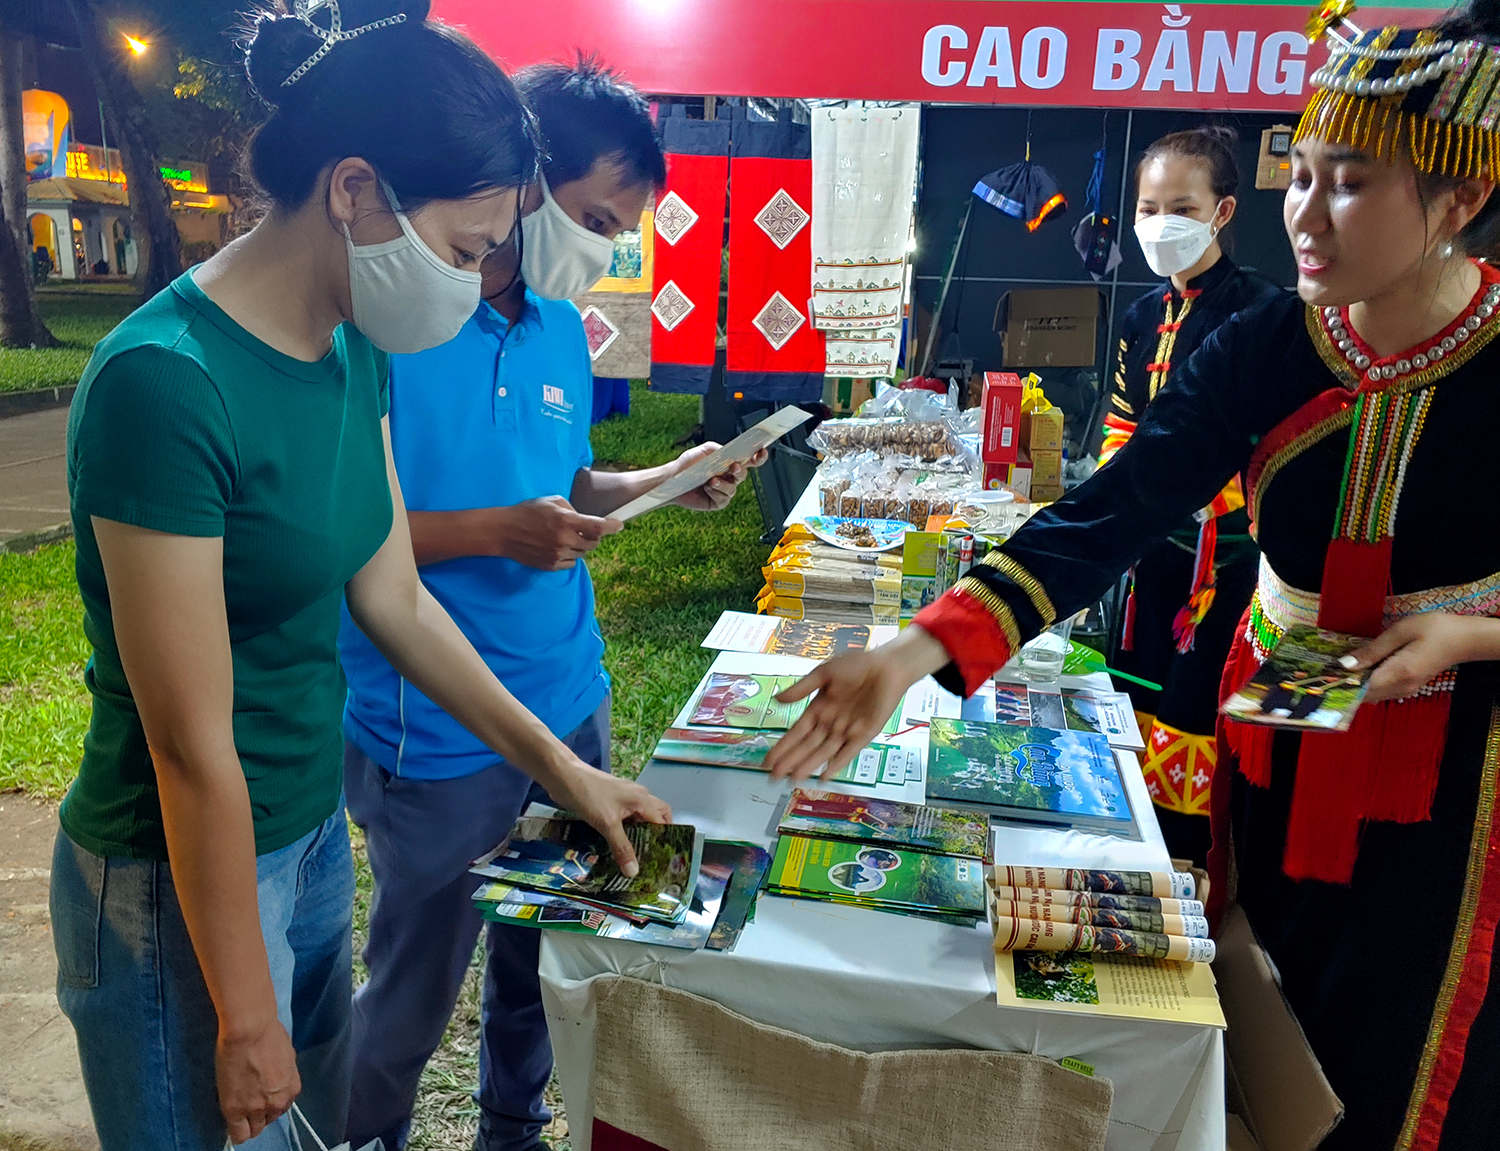 Phóng sự ảnh: Cao Bằng tham gia Ngày hội Du lịch Thành phố Hồ Chí Minh lần thứ 18 năm 2022